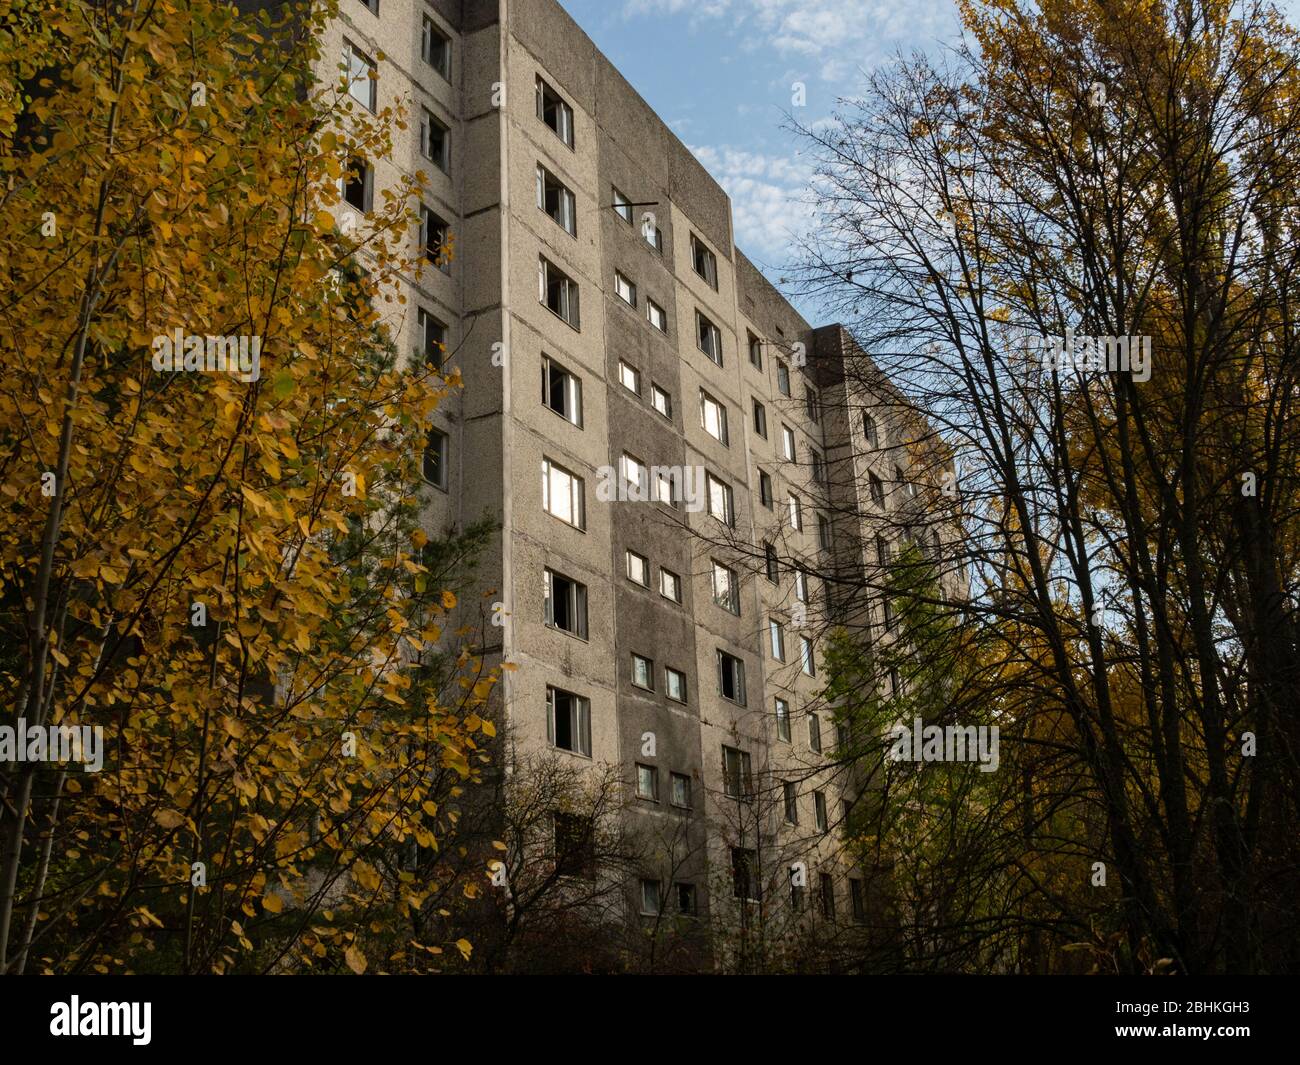 Verlassene Wohngegend und Gebäude. Frühere Straßen und Gassen werden von Bäumen und Büschen eingenommen. Geisterstadt Pripyat, Tschernobyl-Ausschlusszone. Ukr Stockfoto